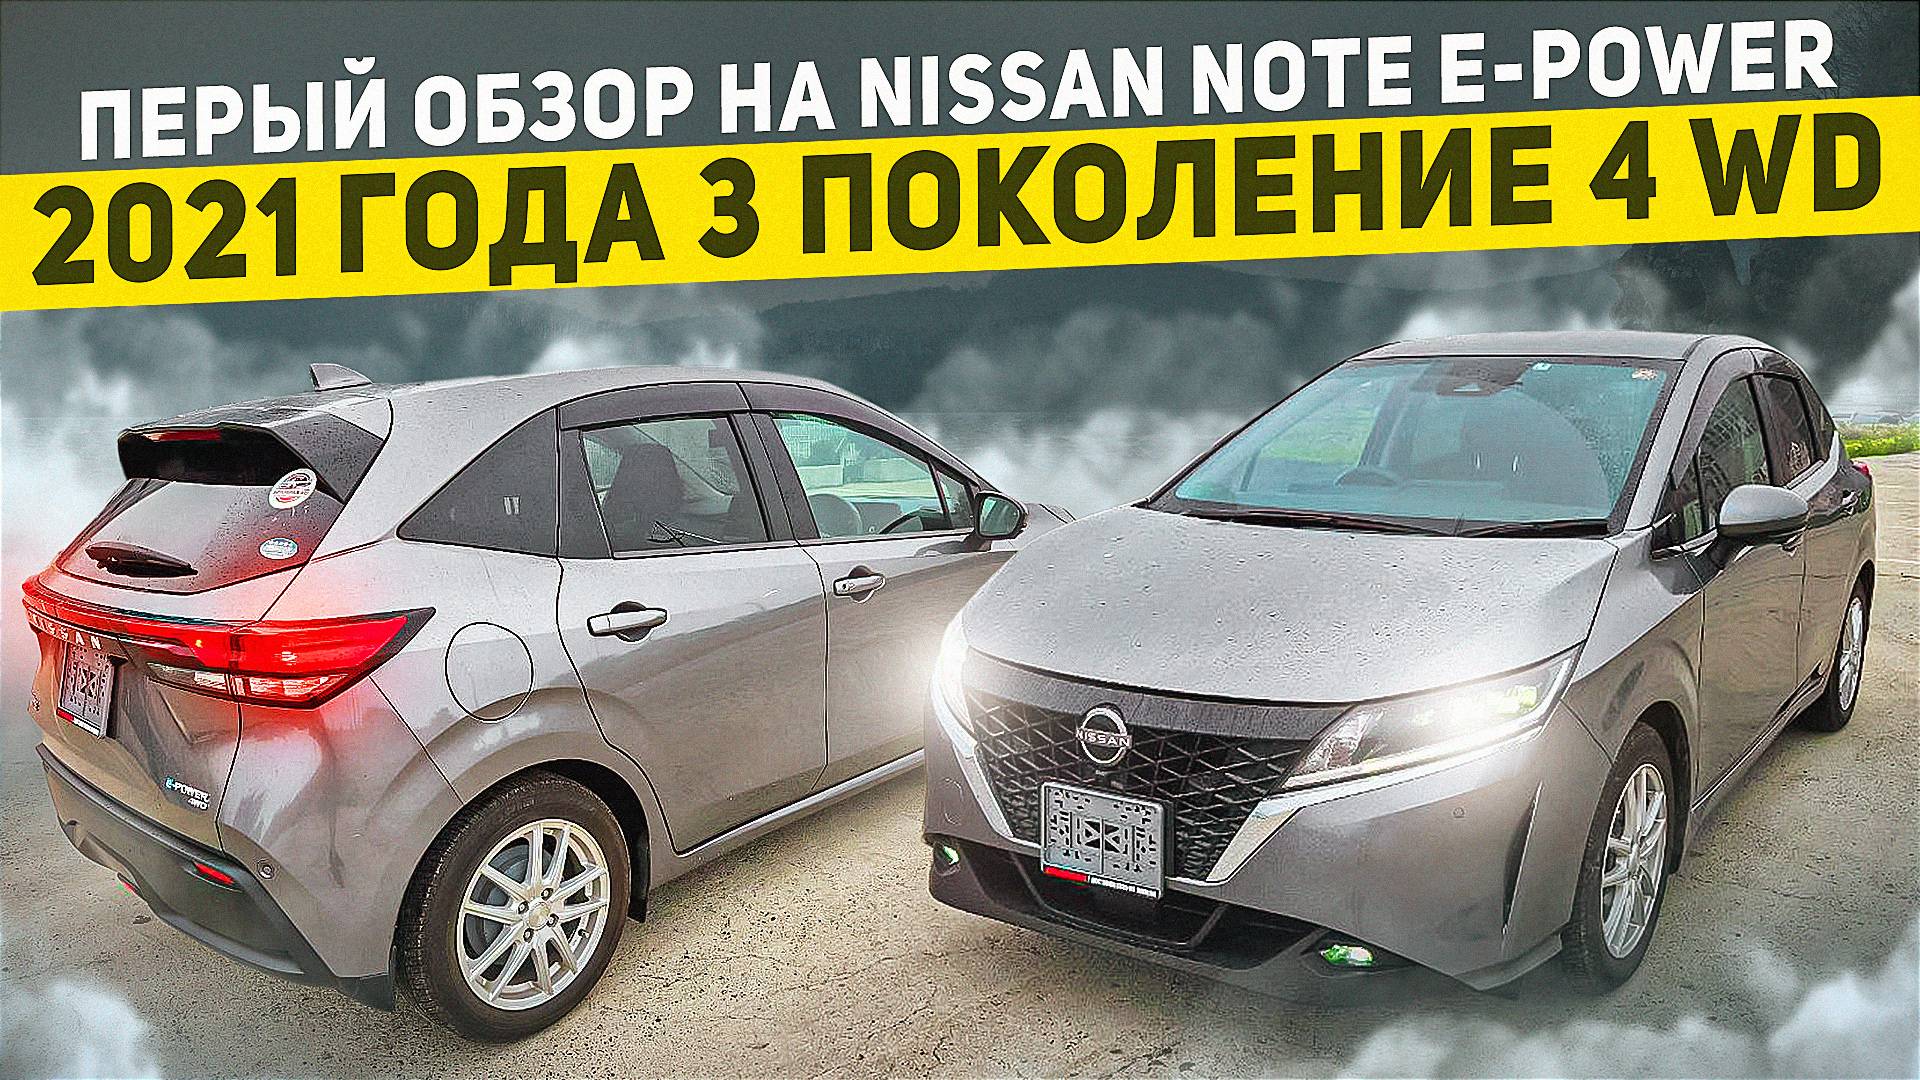 Обзор Nissan note Epower 4wd 2021 полноприводный гибрид из Японии.